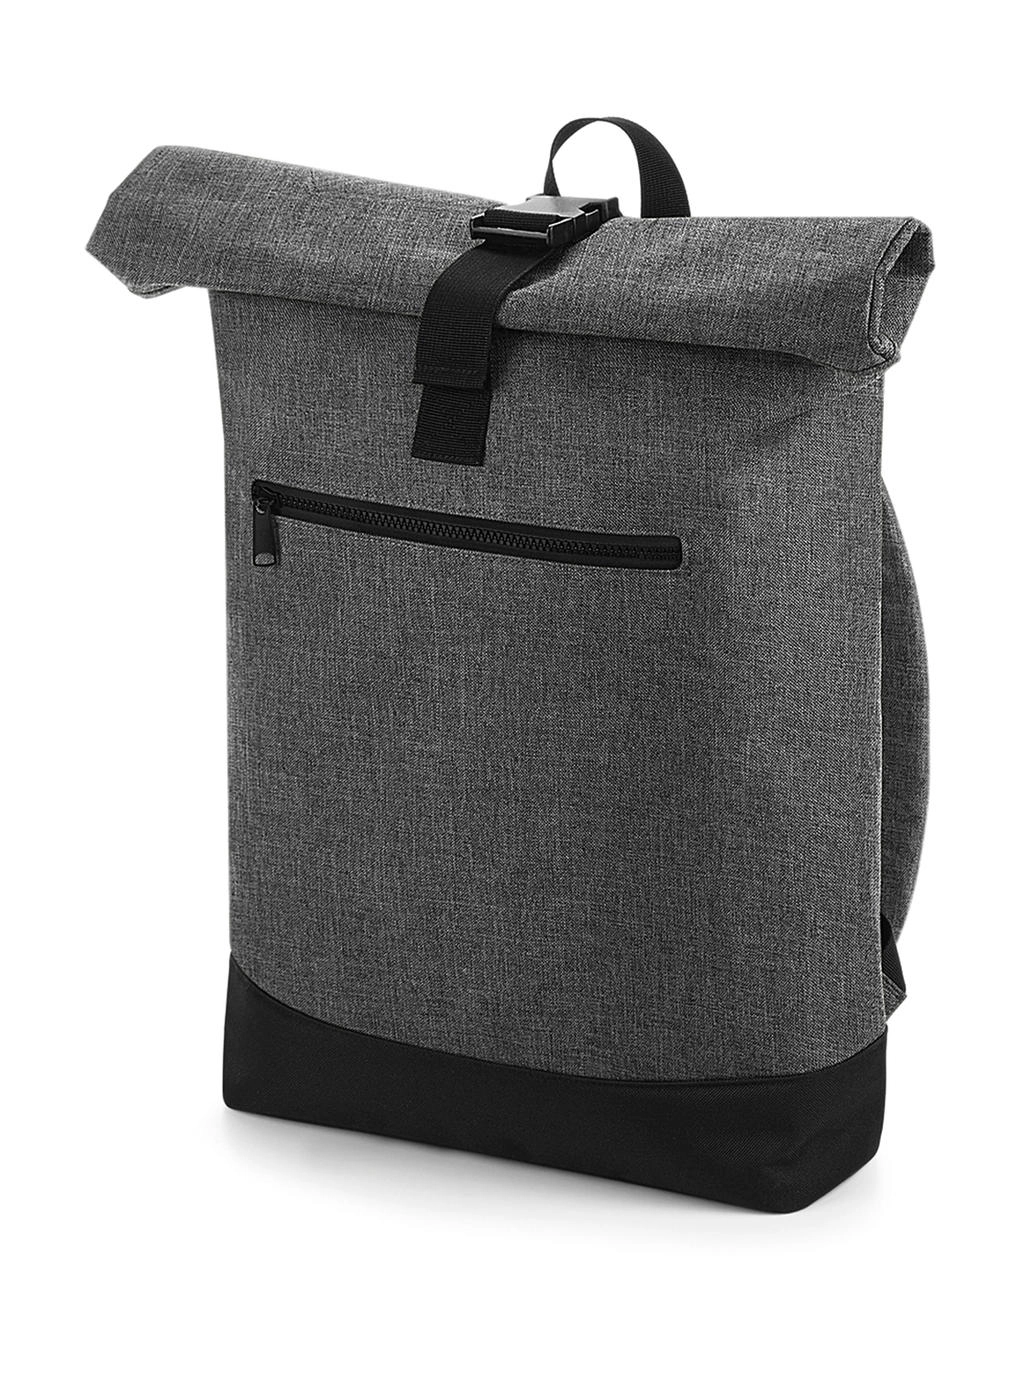 Roll-Top Backpack zum Besticken und Bedrucken in der Farbe Grey Marl/Black mit Ihren Logo, Schriftzug oder Motiv.